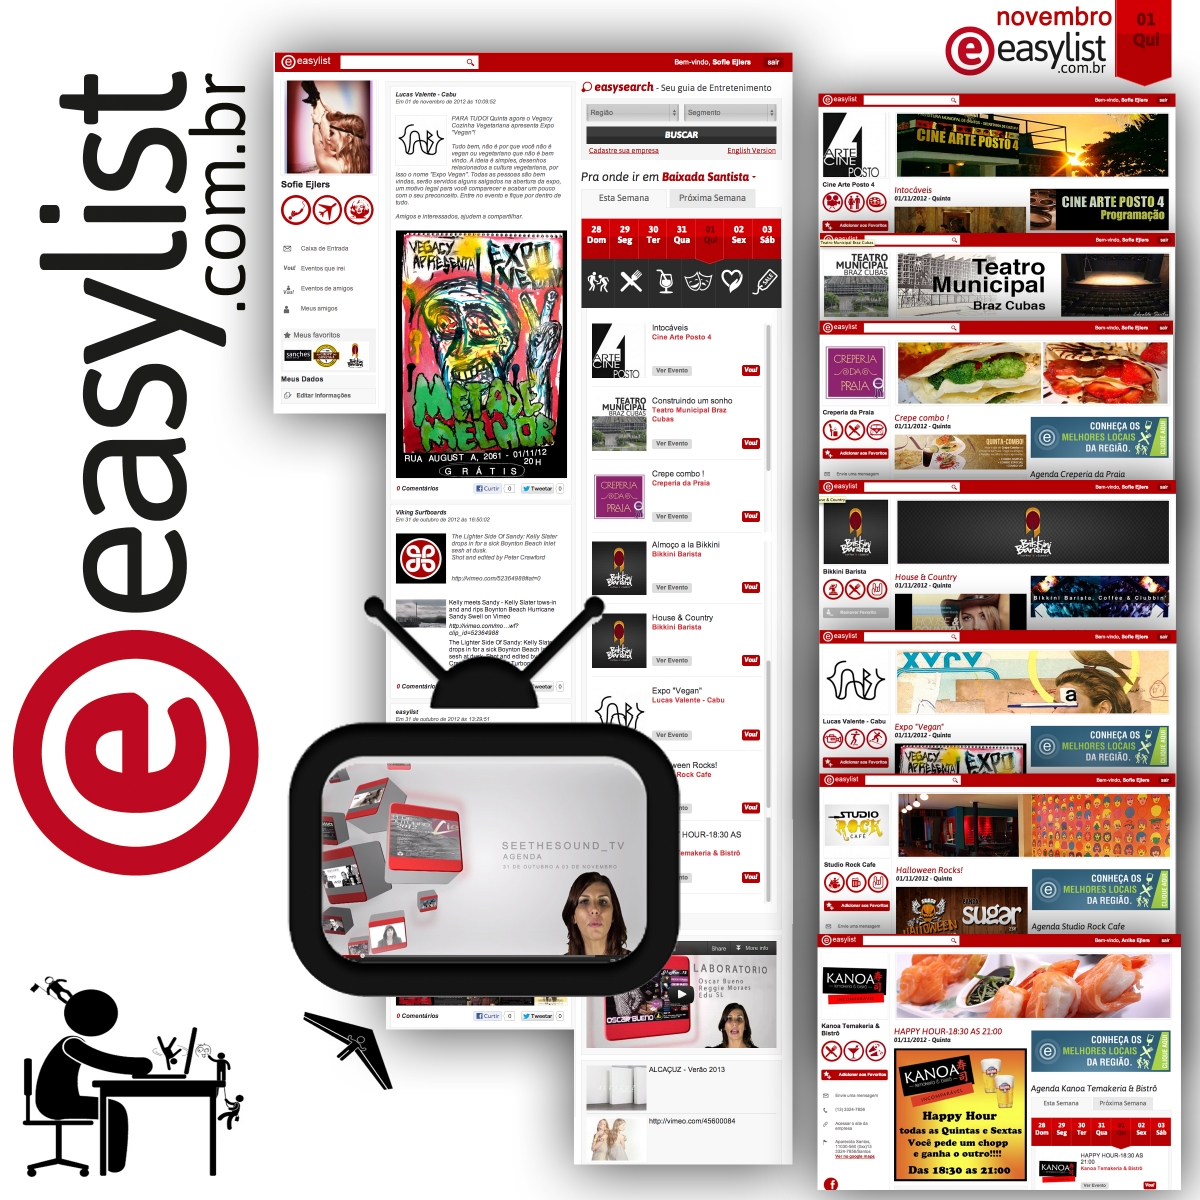 entretenimento | Easylist | programação para o fim de semana | sites legais | sites de entretenimento | Conheça Easylist